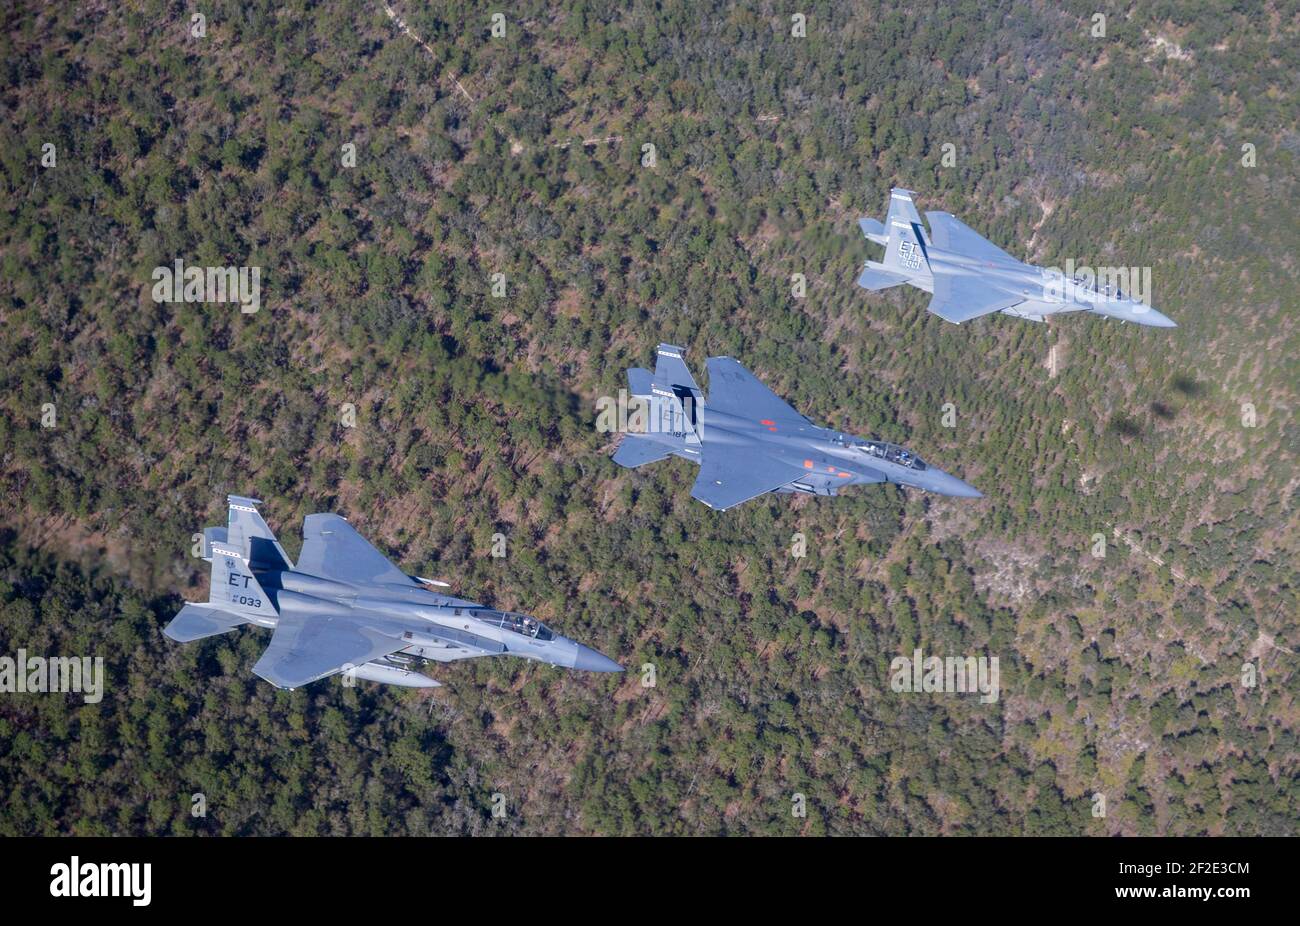 Valparaiso, États-Unis. 11 mars 2021. Les avions de chasse F-15 Strike Eagle de la U.S. Air Force escortent le premier avion de chasse F-15EX de nouvelle génération, le centre, à la base aérienne d'Eglin le 11 mars 2021 à Valparaiso, en Floride. Credit: Planetpix/Alamy Live News Banque D'Images